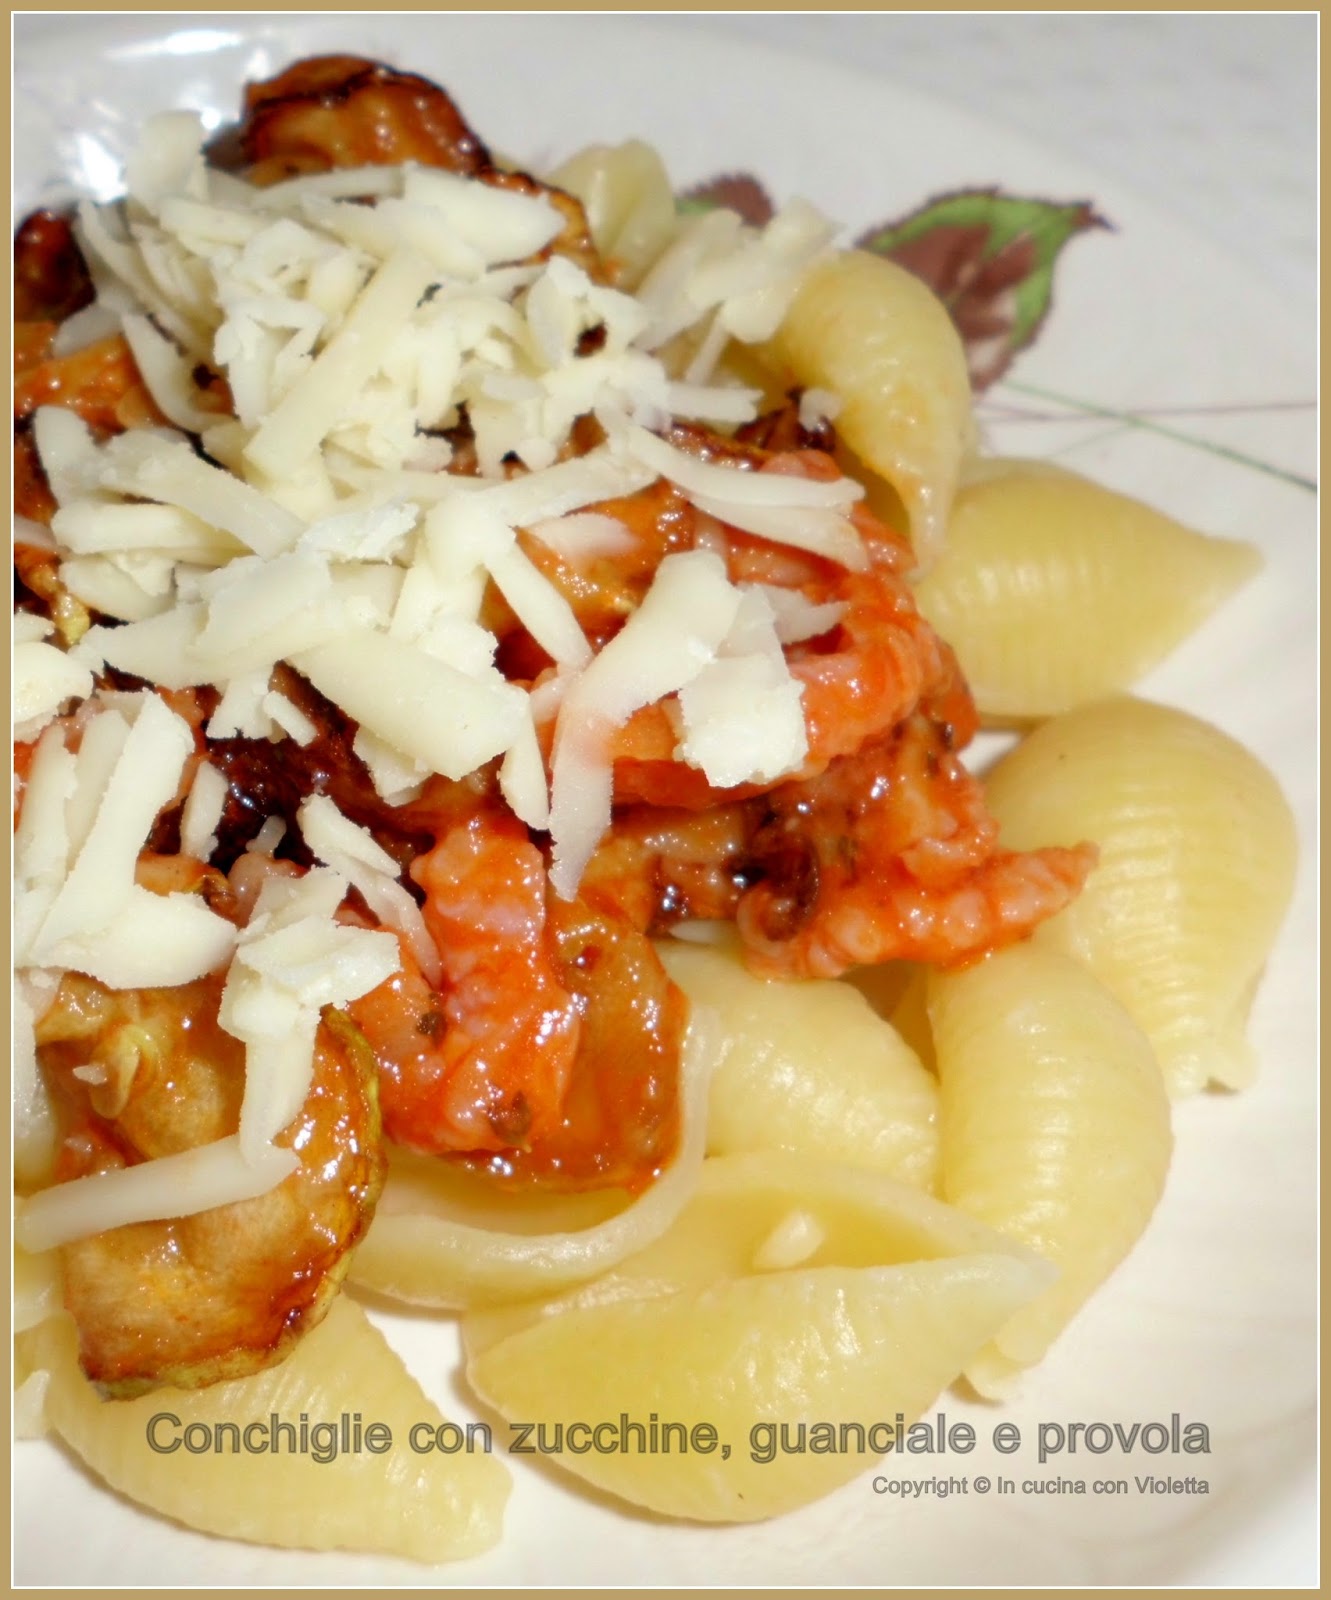 Conchiglie con zucchine, guanciale e provola Copyright © In cucina con Violetta